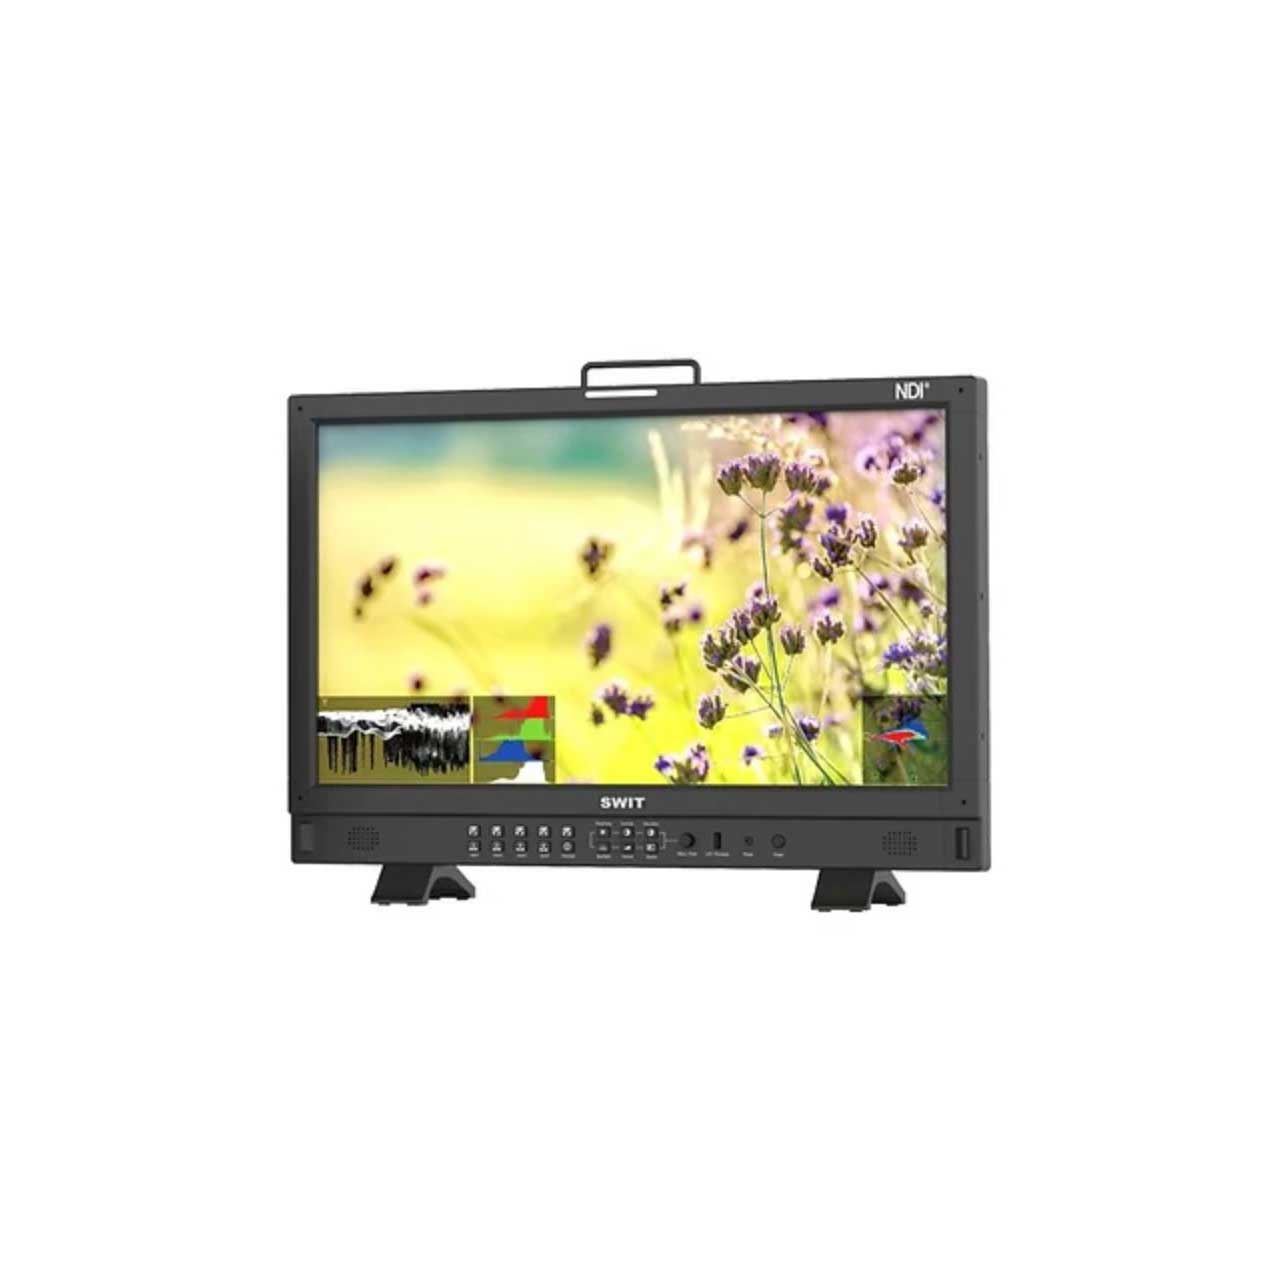 SWIT BM-245-NDI 23.8-inch 3G-SDI / HDMI2.0 1920x1080 QLED NDI Monitor - Gold Mount BM-245-NDI-A